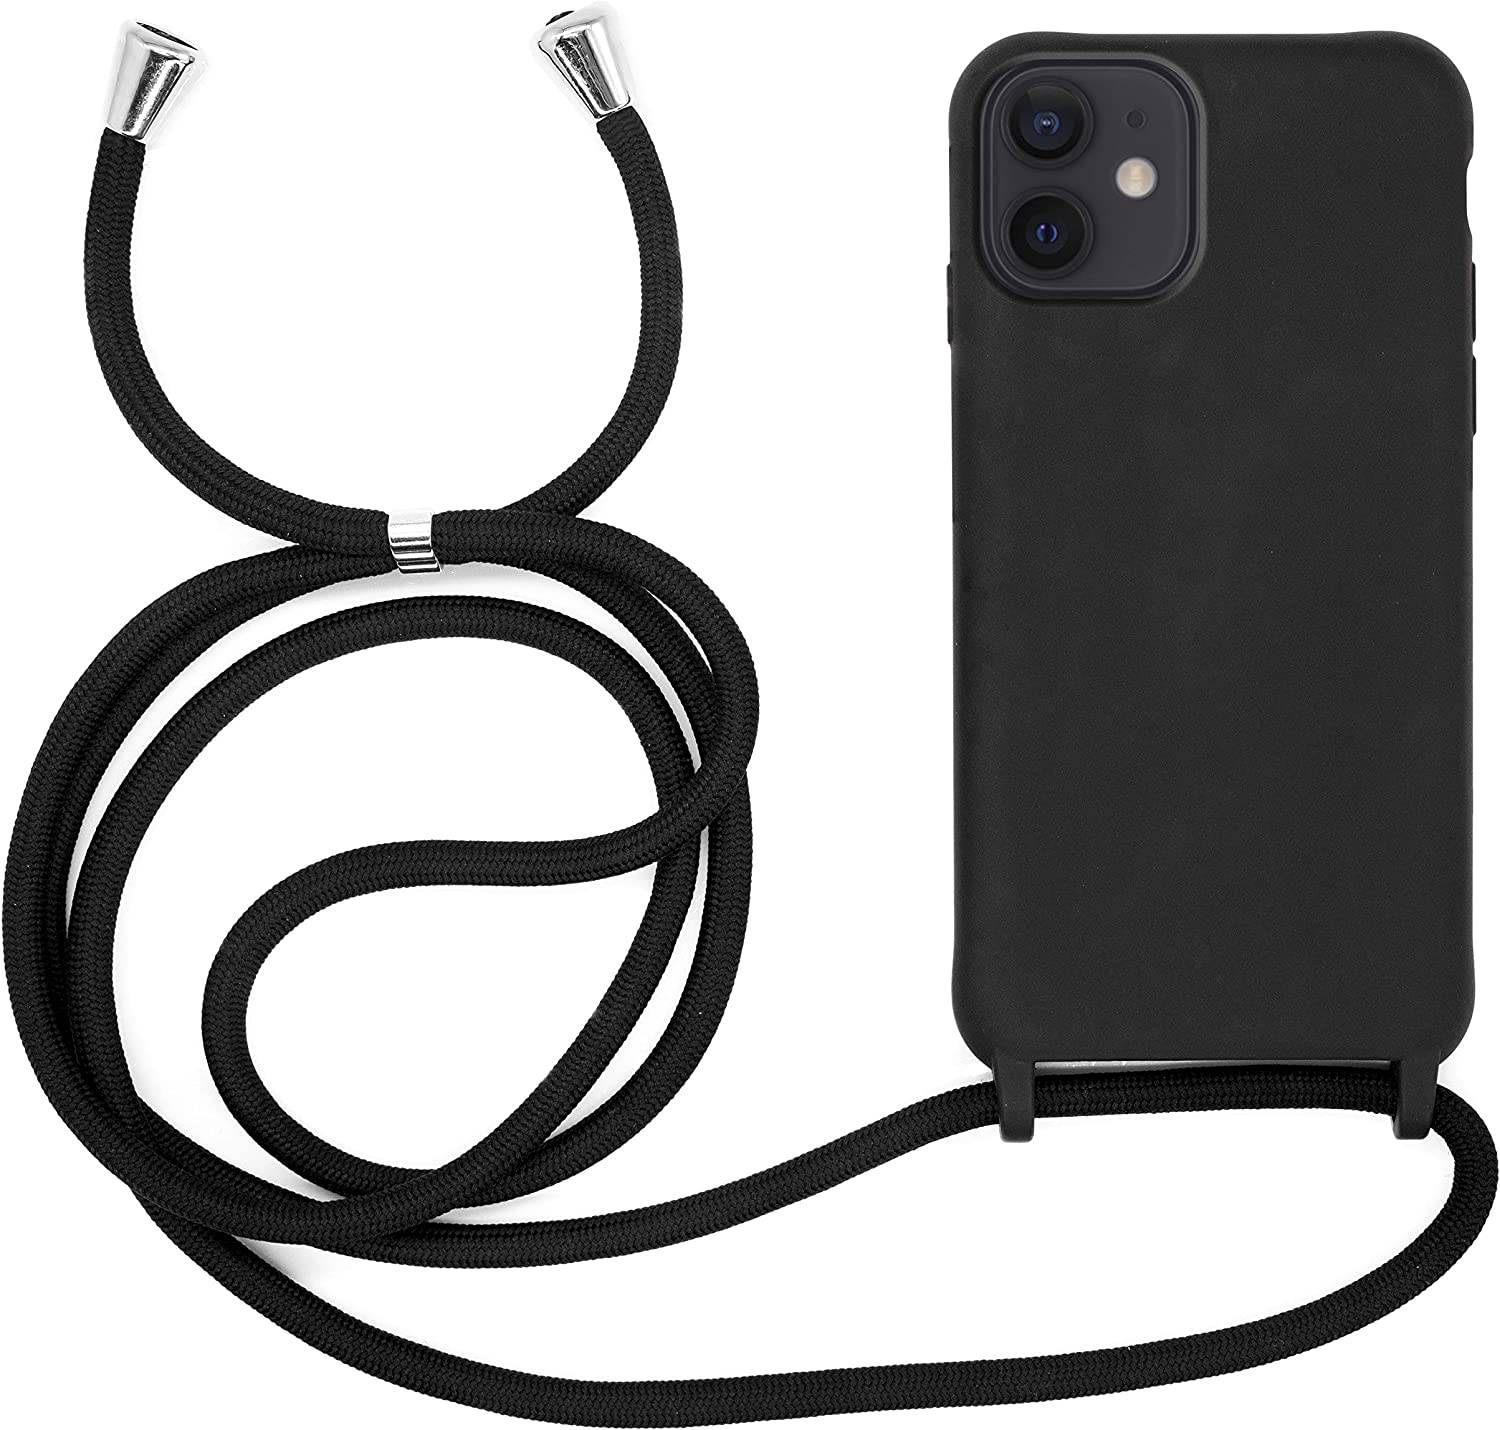 Coque avec cordon pour iPhone 12 mini - Protection en Silicone Case - Coque tour de cou, bandoulière iPhone - Coques&Co